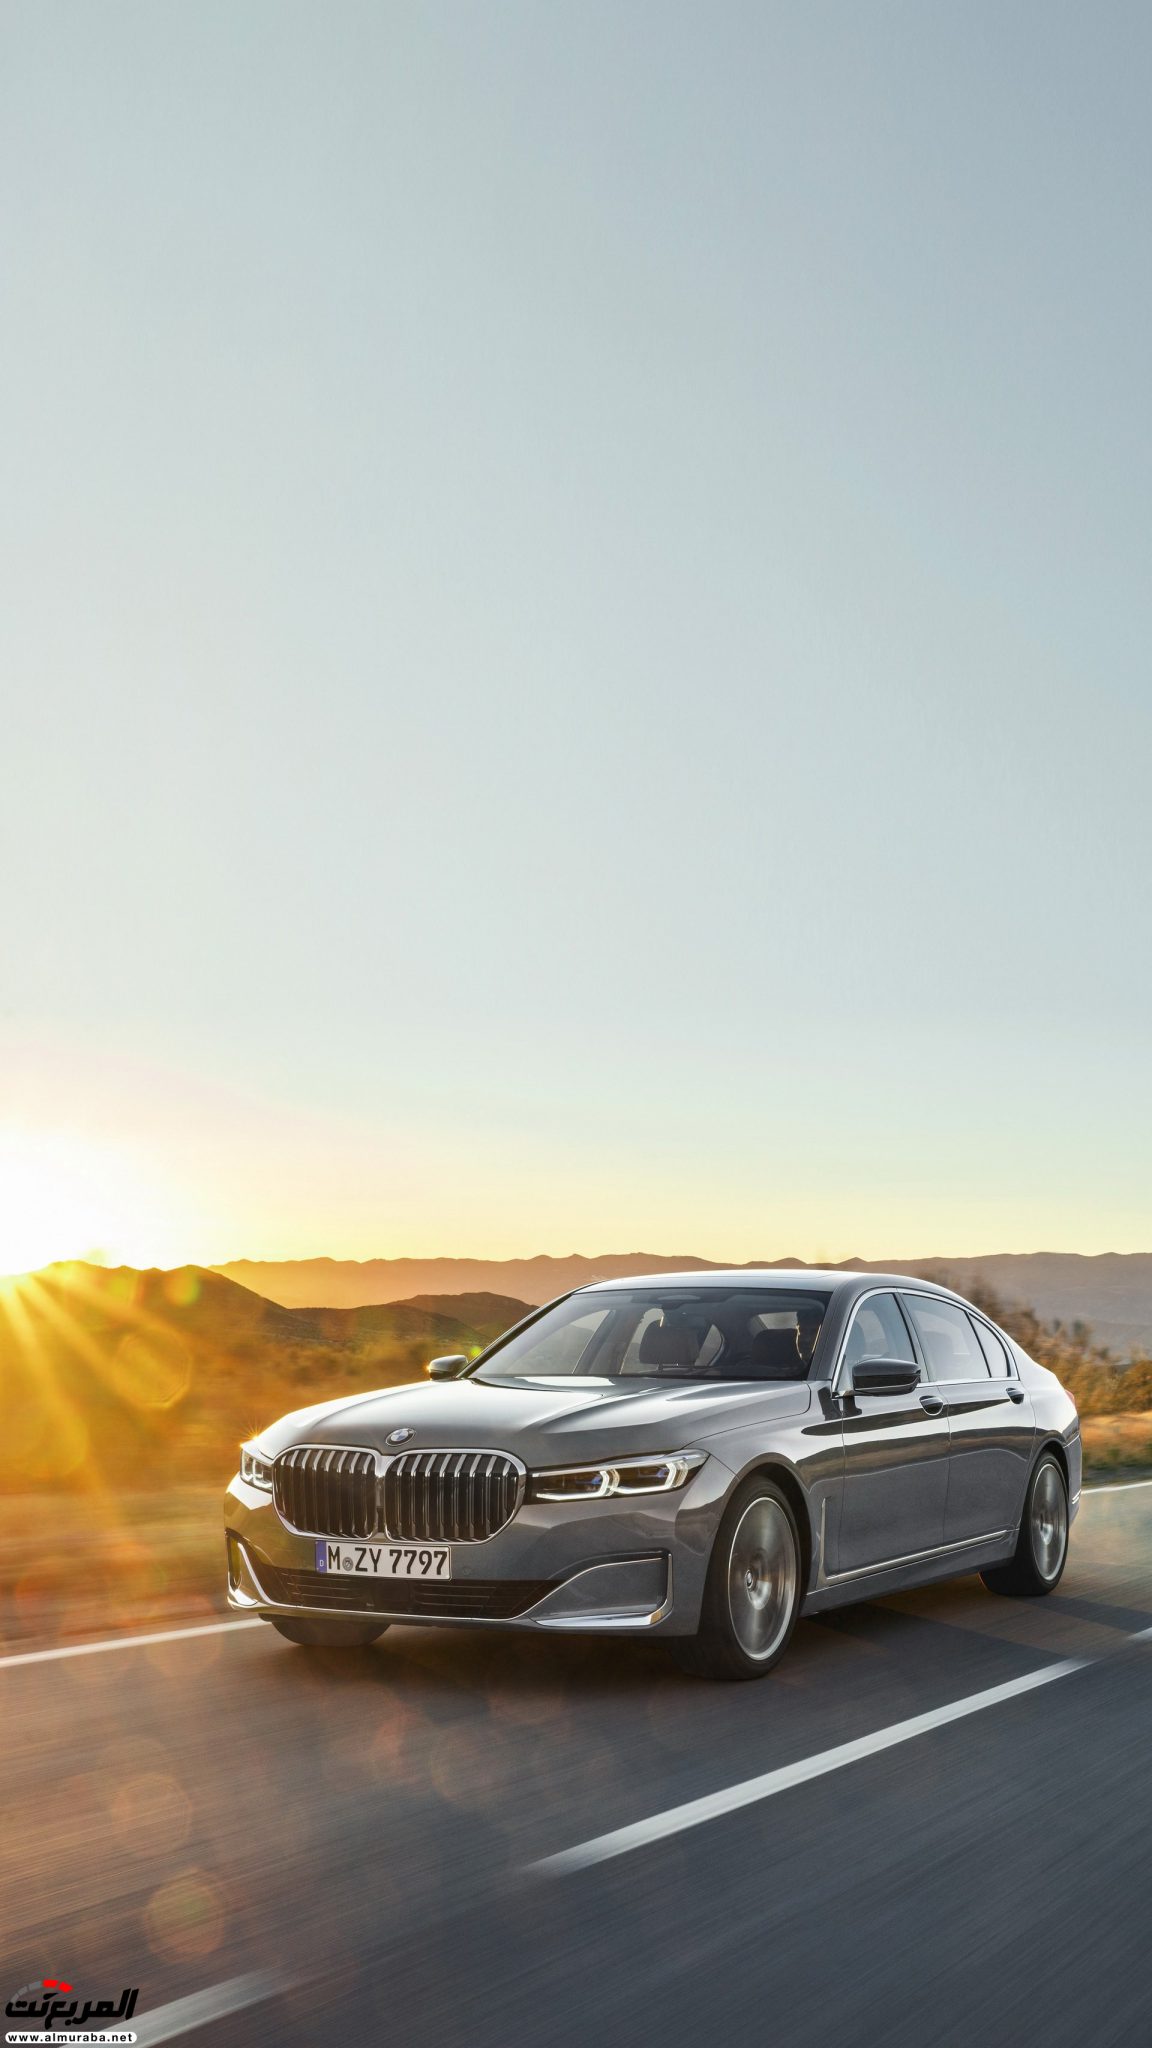 بي ام دبليو الفئة السابعة 2020 المحدثة تكشف نفسها رسمياً "صور ومواصفات" BMW 7 Series 252